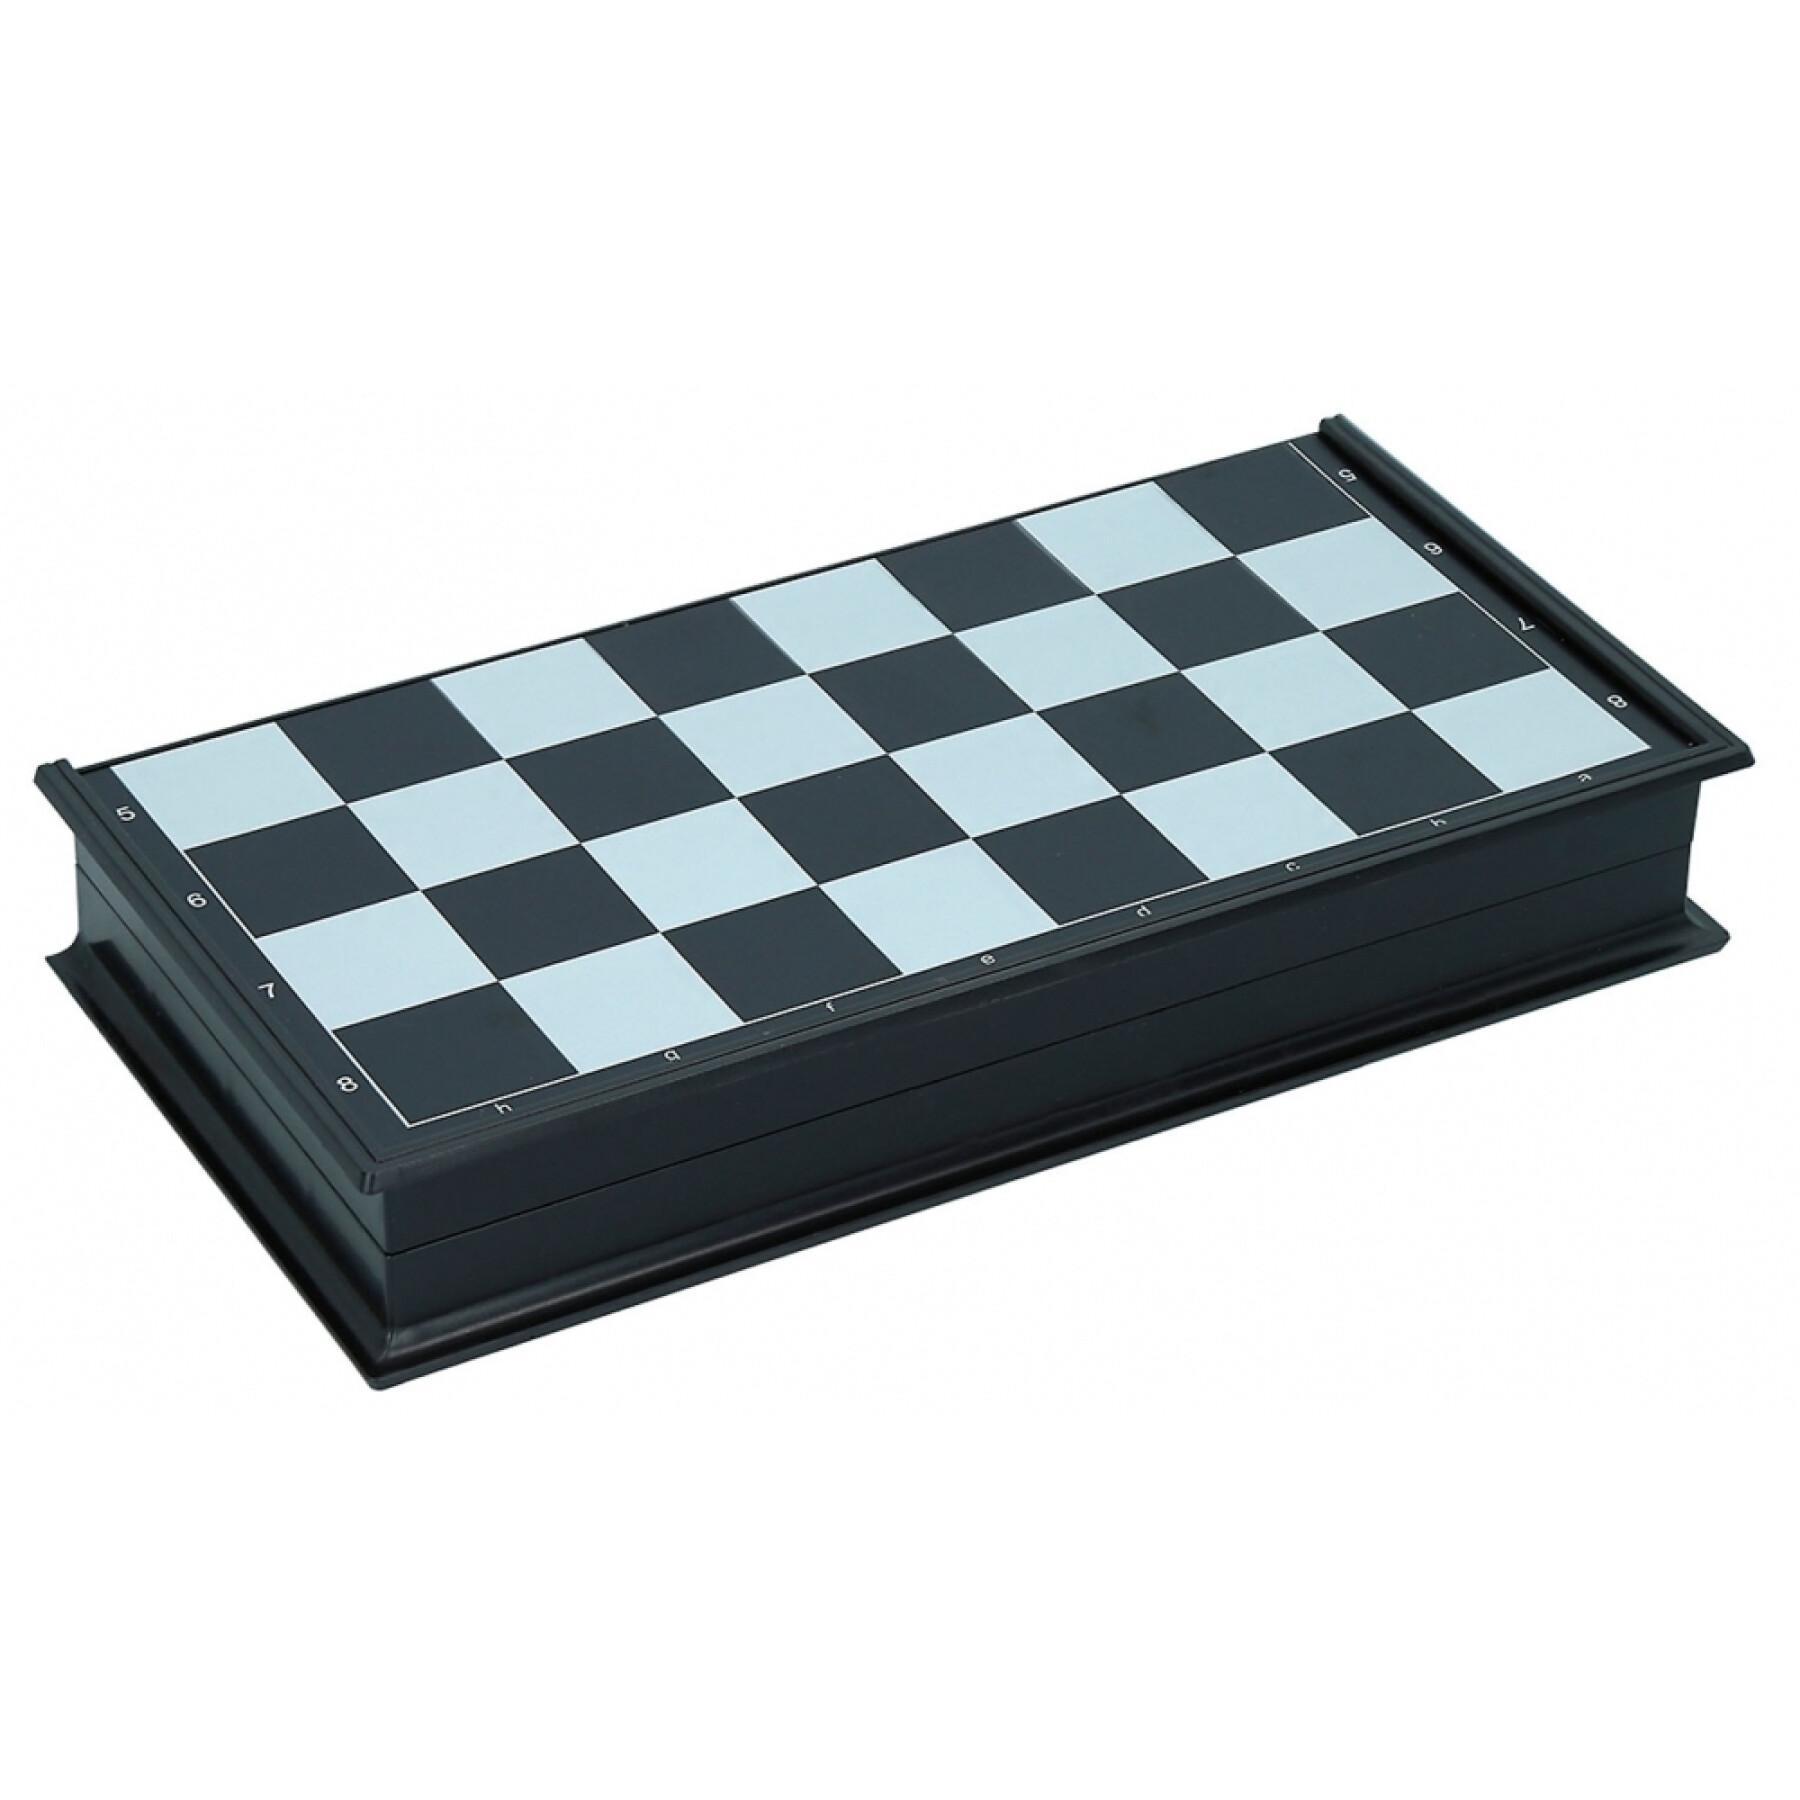 Magnetische Schach-/Damen-Spiele CB Games